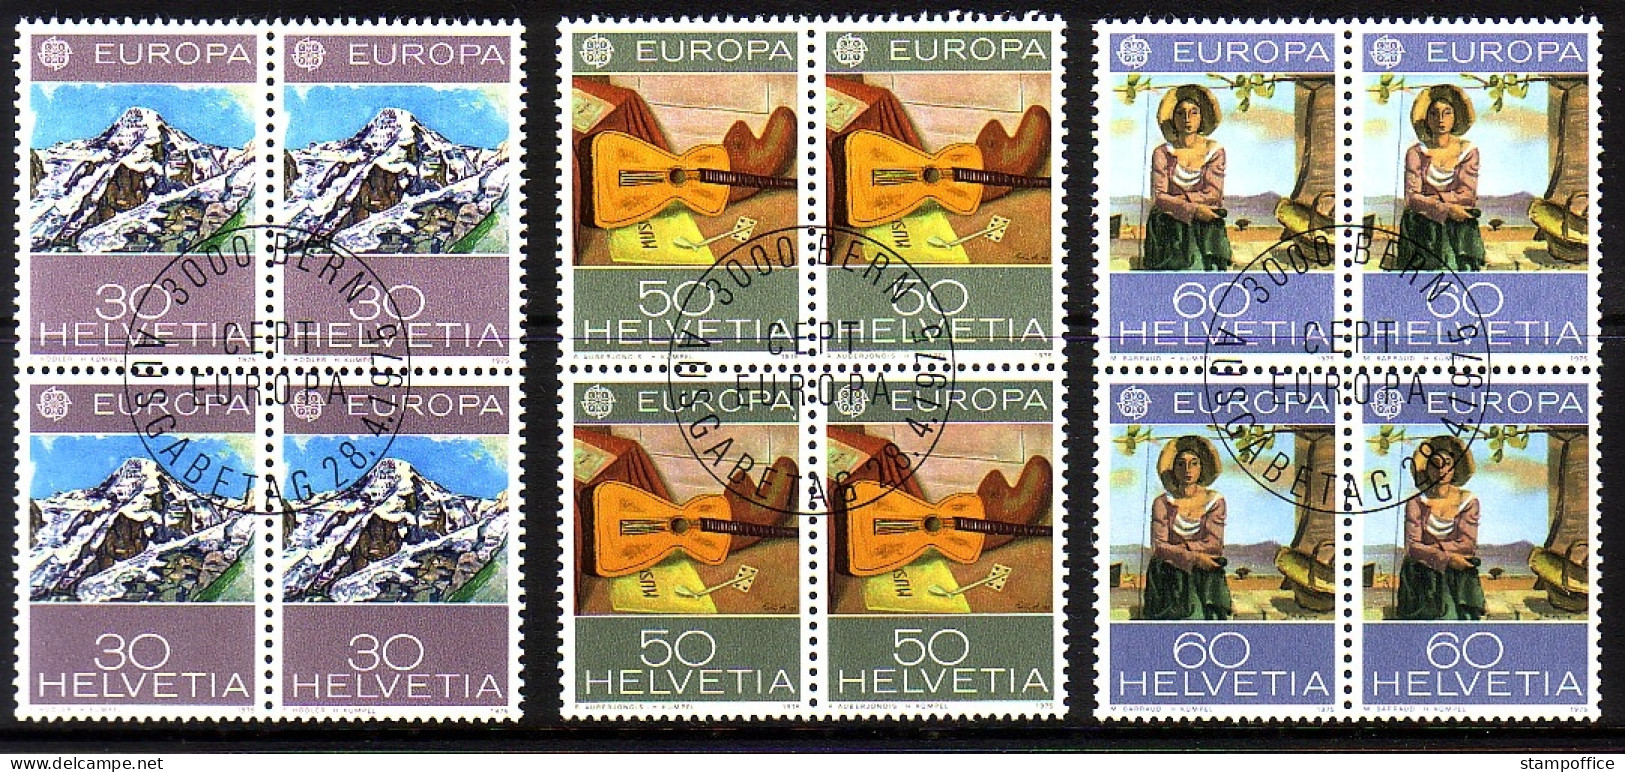 SCHWEIZ MI-NR. 1050-1052 GESTEMPELT(USED) 4er BLOCK EUROPA 1975 GEMÄLDE - 1975